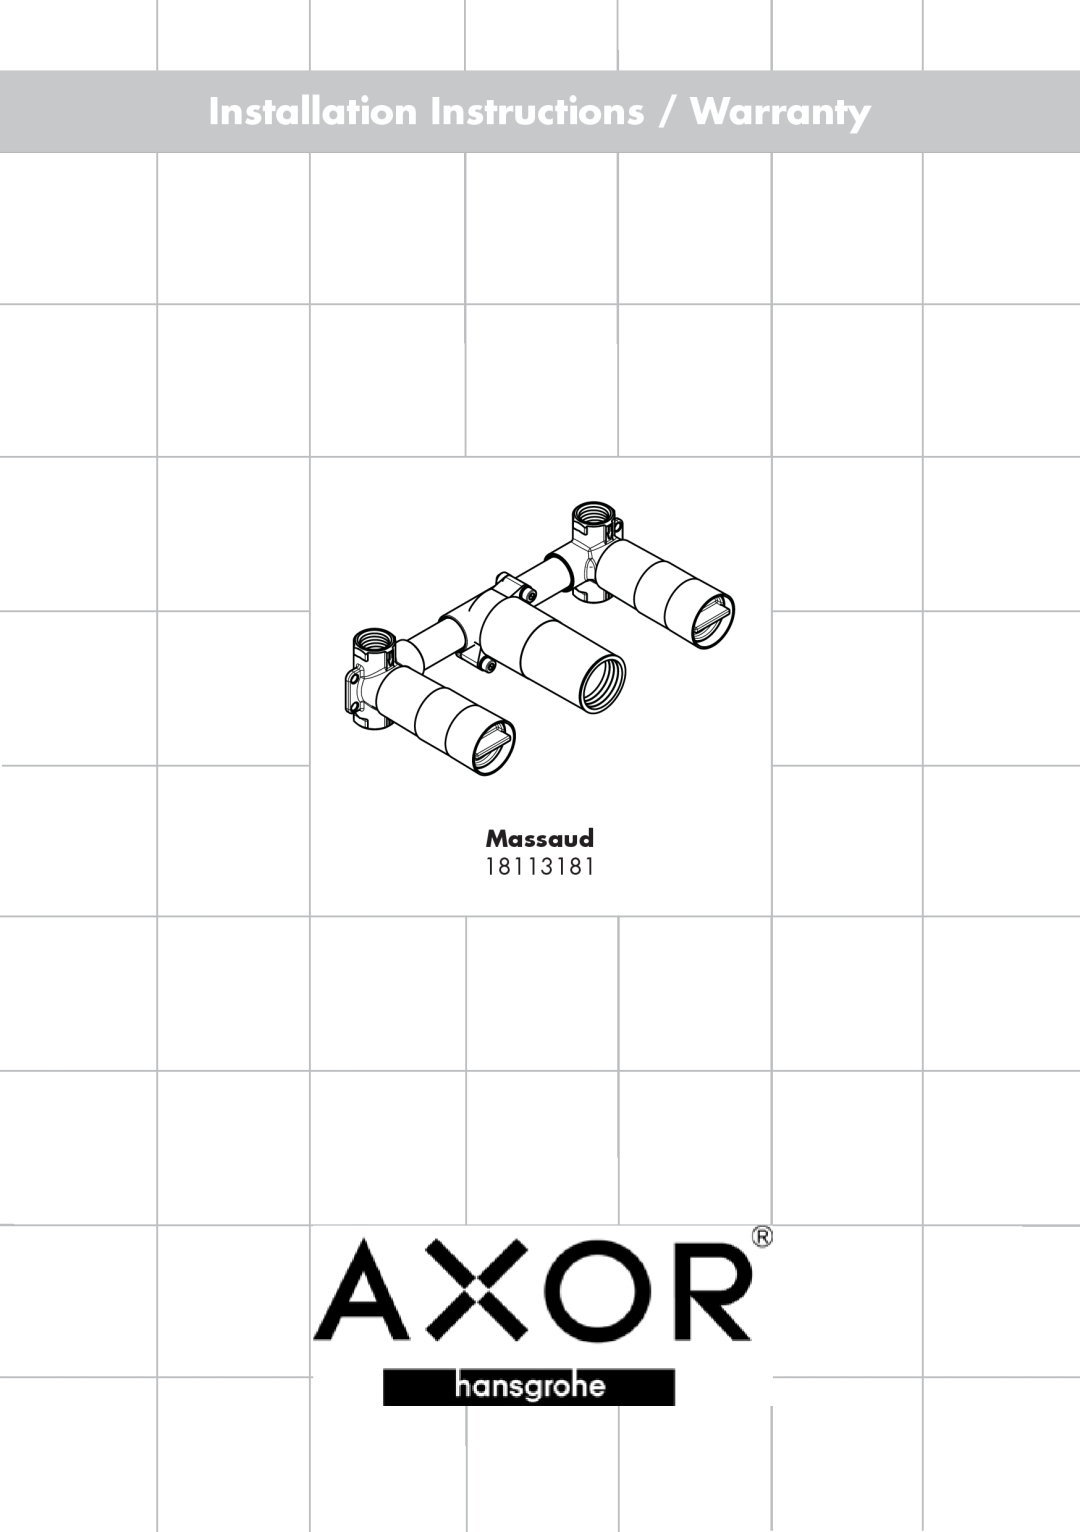 Axor 18113181 installation instructions Installation Instructions / Warranty, Massaud 